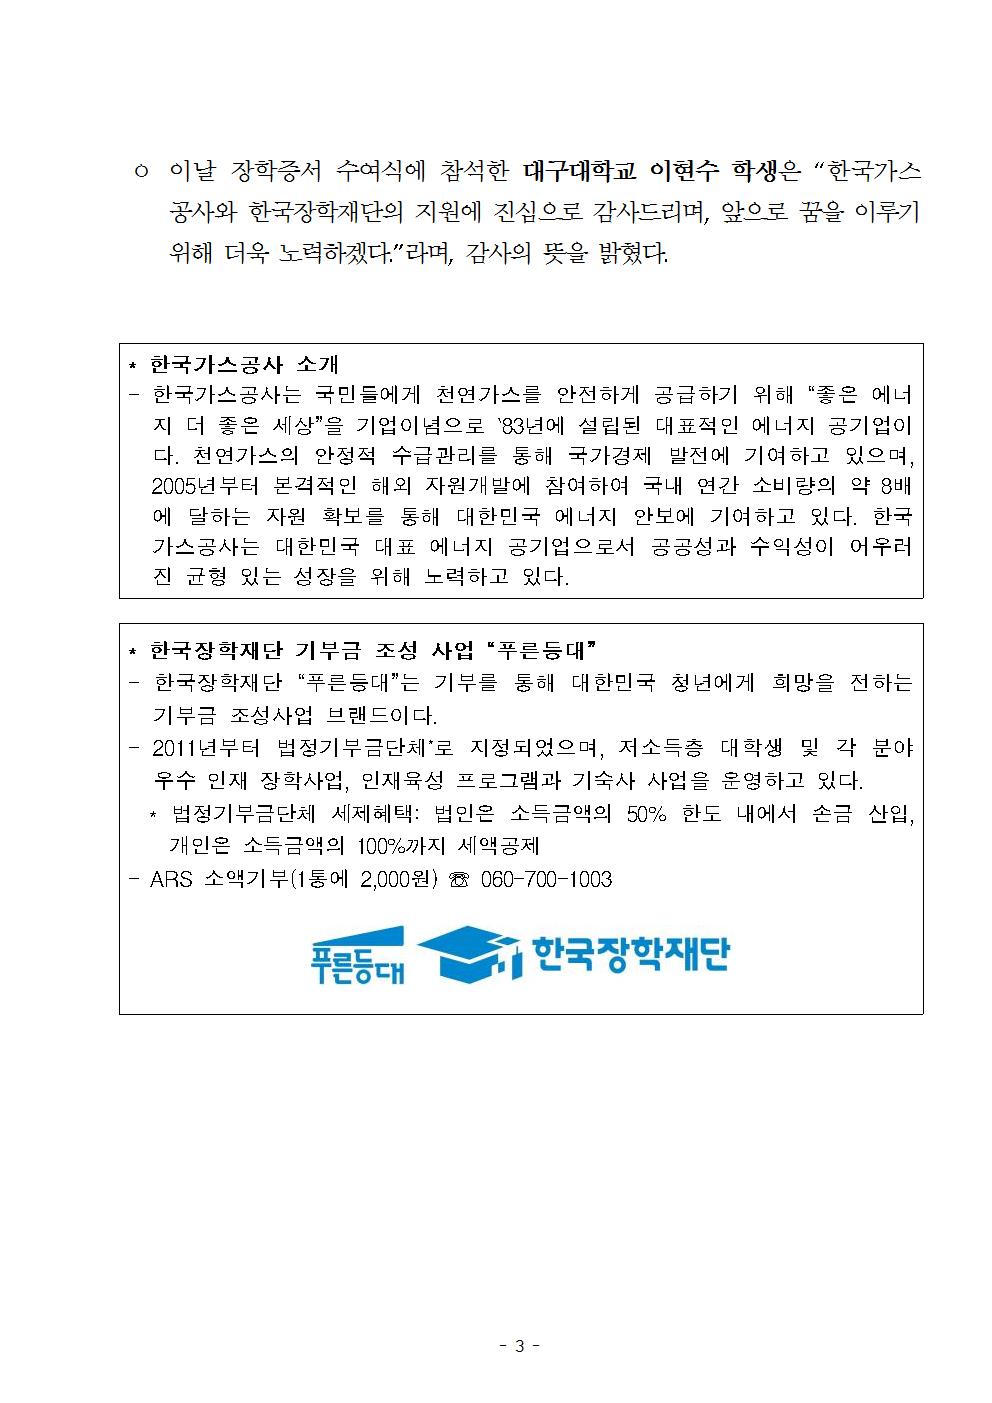 11-27(화)[보도자료] (한국장학재단-한국가스공사) 푸른등대 기부장학금 기탁식 개최003.jpg